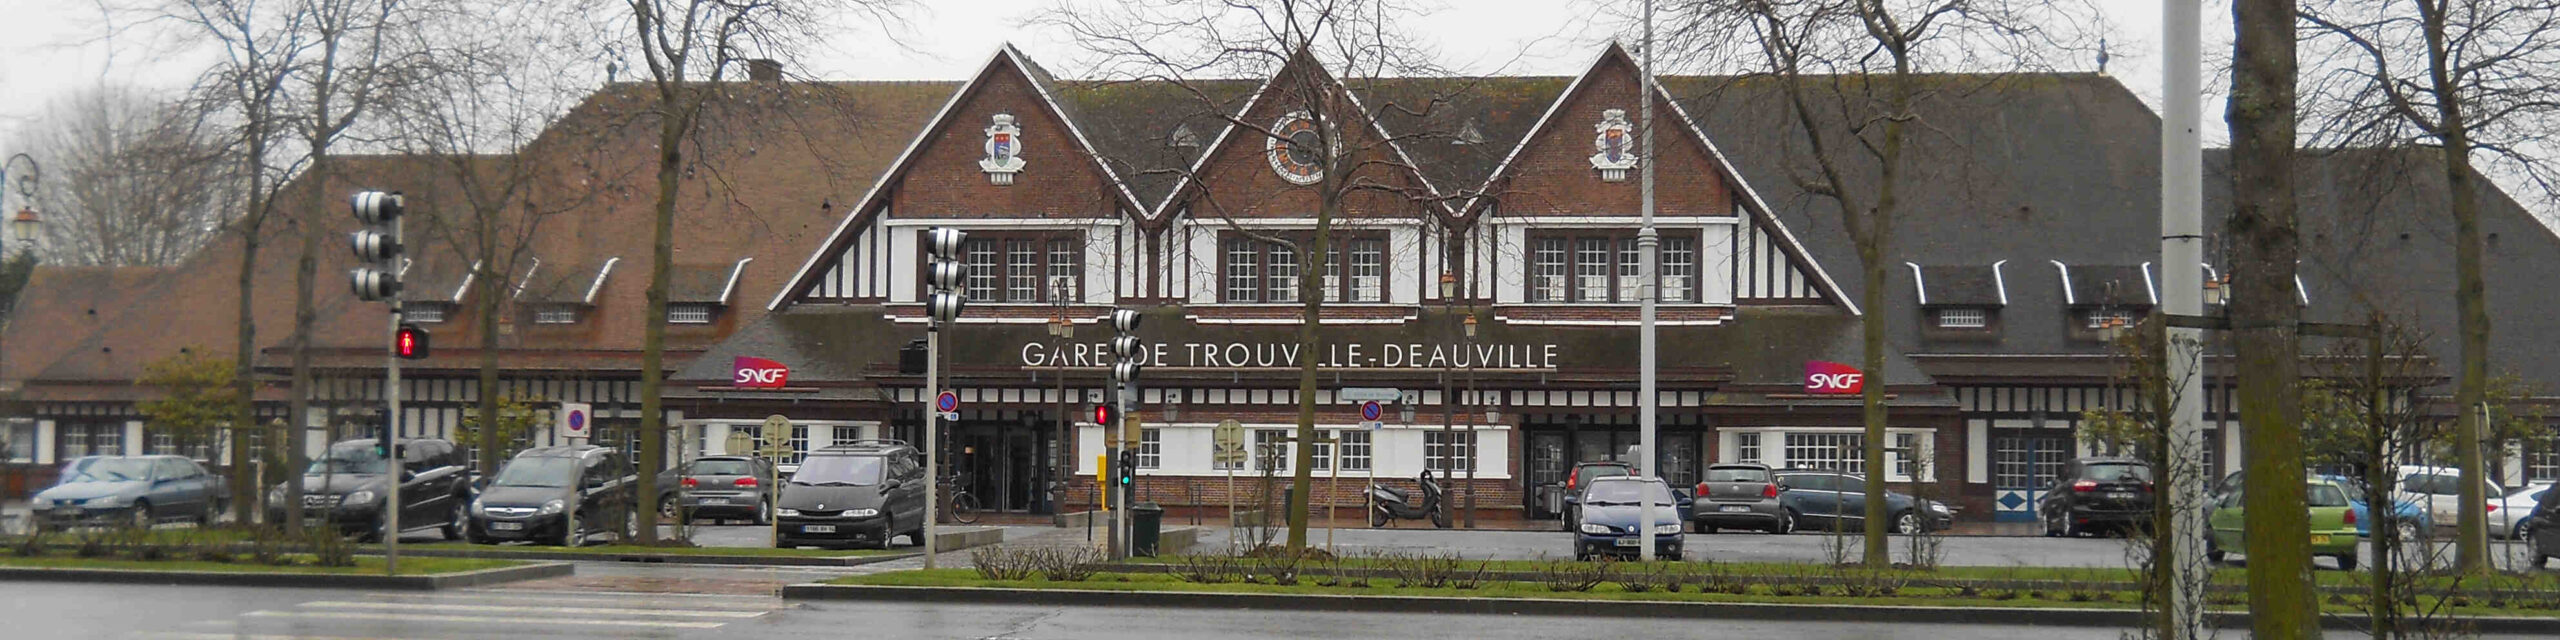 Où se garer gratuitement à Deauville?